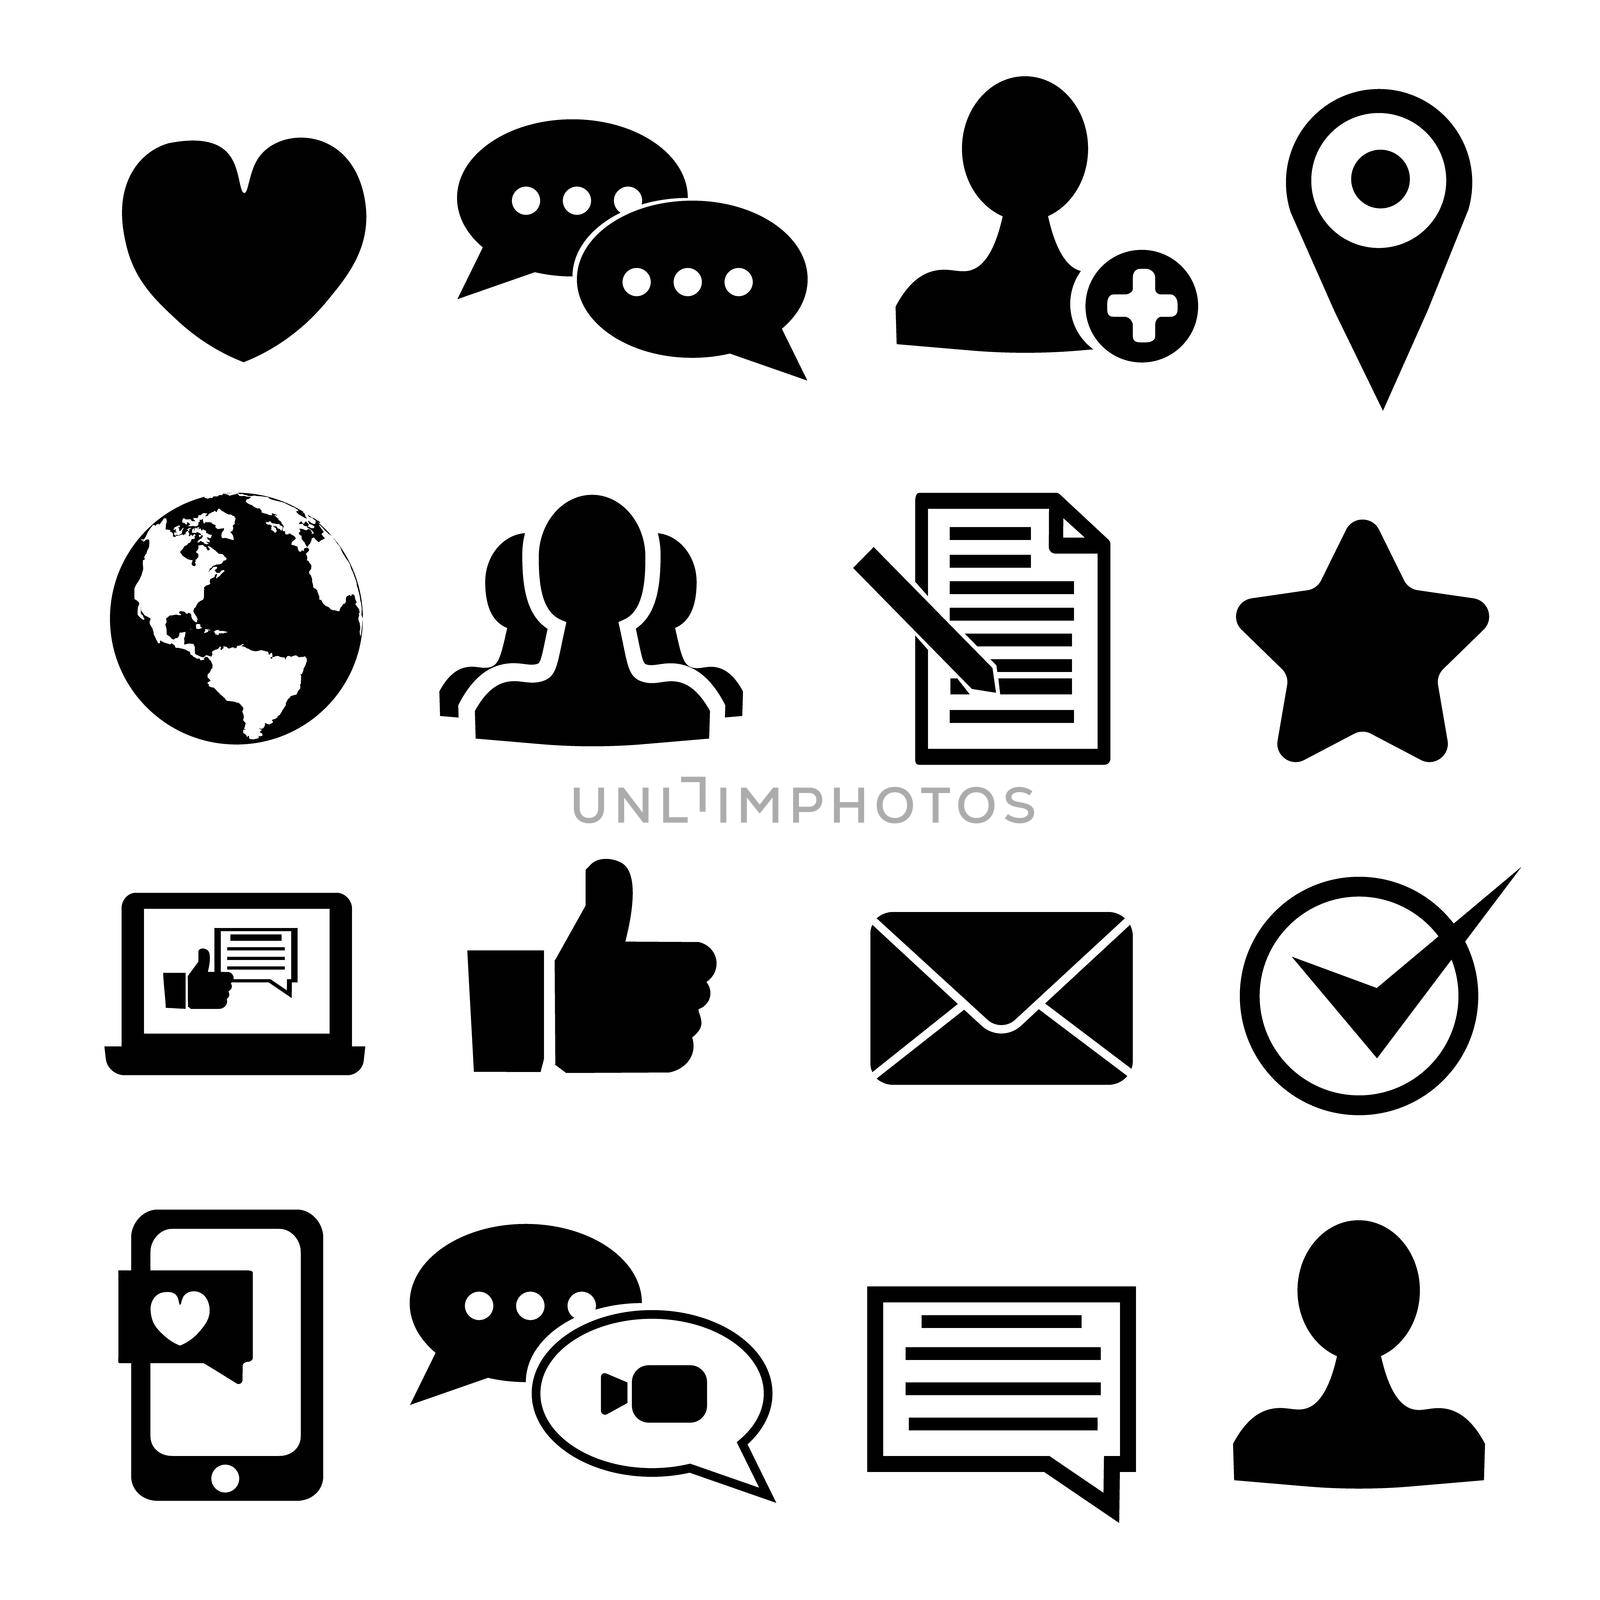 Media and communication icons flat on white background. Illustration